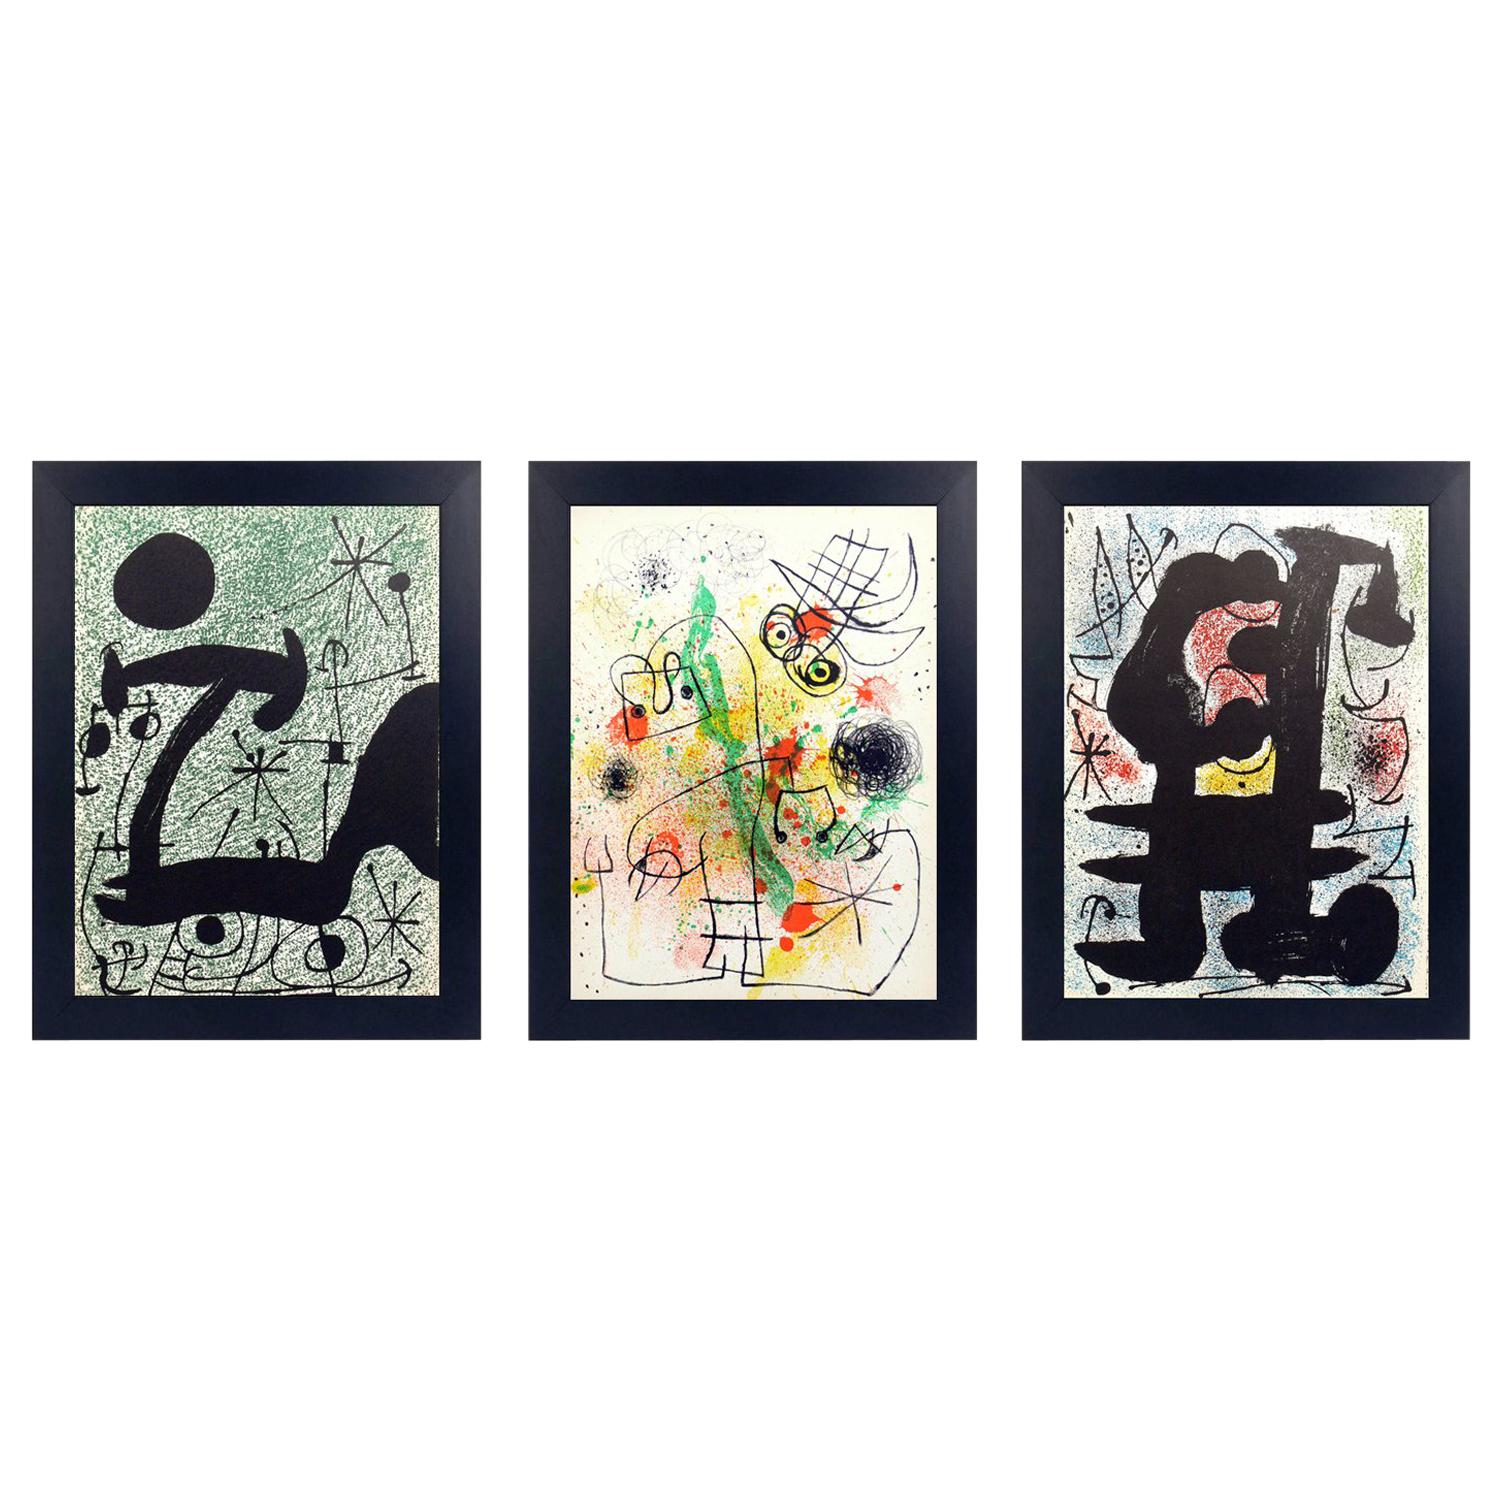 Auswahl von Farblithografien von Joan Miro, Frankreich, ca. 1960er Jahre. Wir haben eine Gruppe dieser Farblithografien aus dem Nachlass eines Ehepaars erworben, das von 1951-1983 in Frankreich lebte. Sie stammen höchstwahrscheinlich aus der